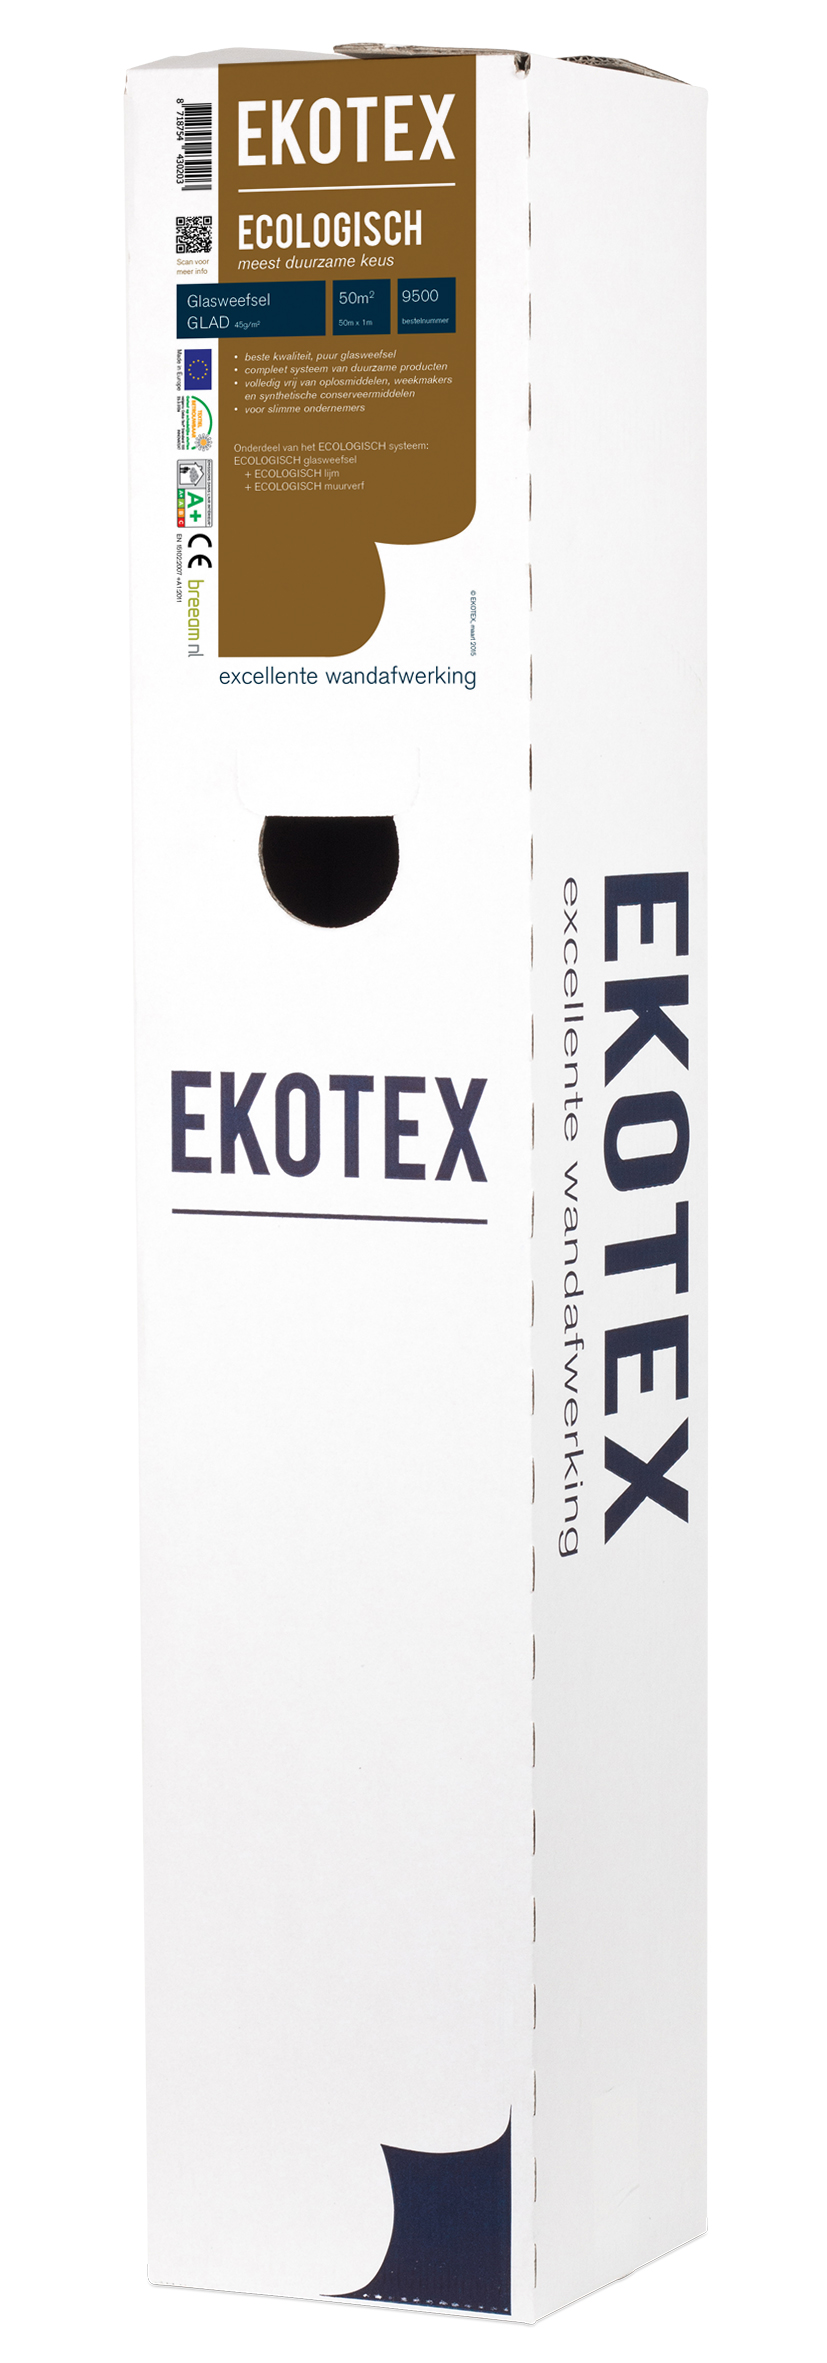 Ekotex Ecologisch Glad 9500 Rol 50mtr